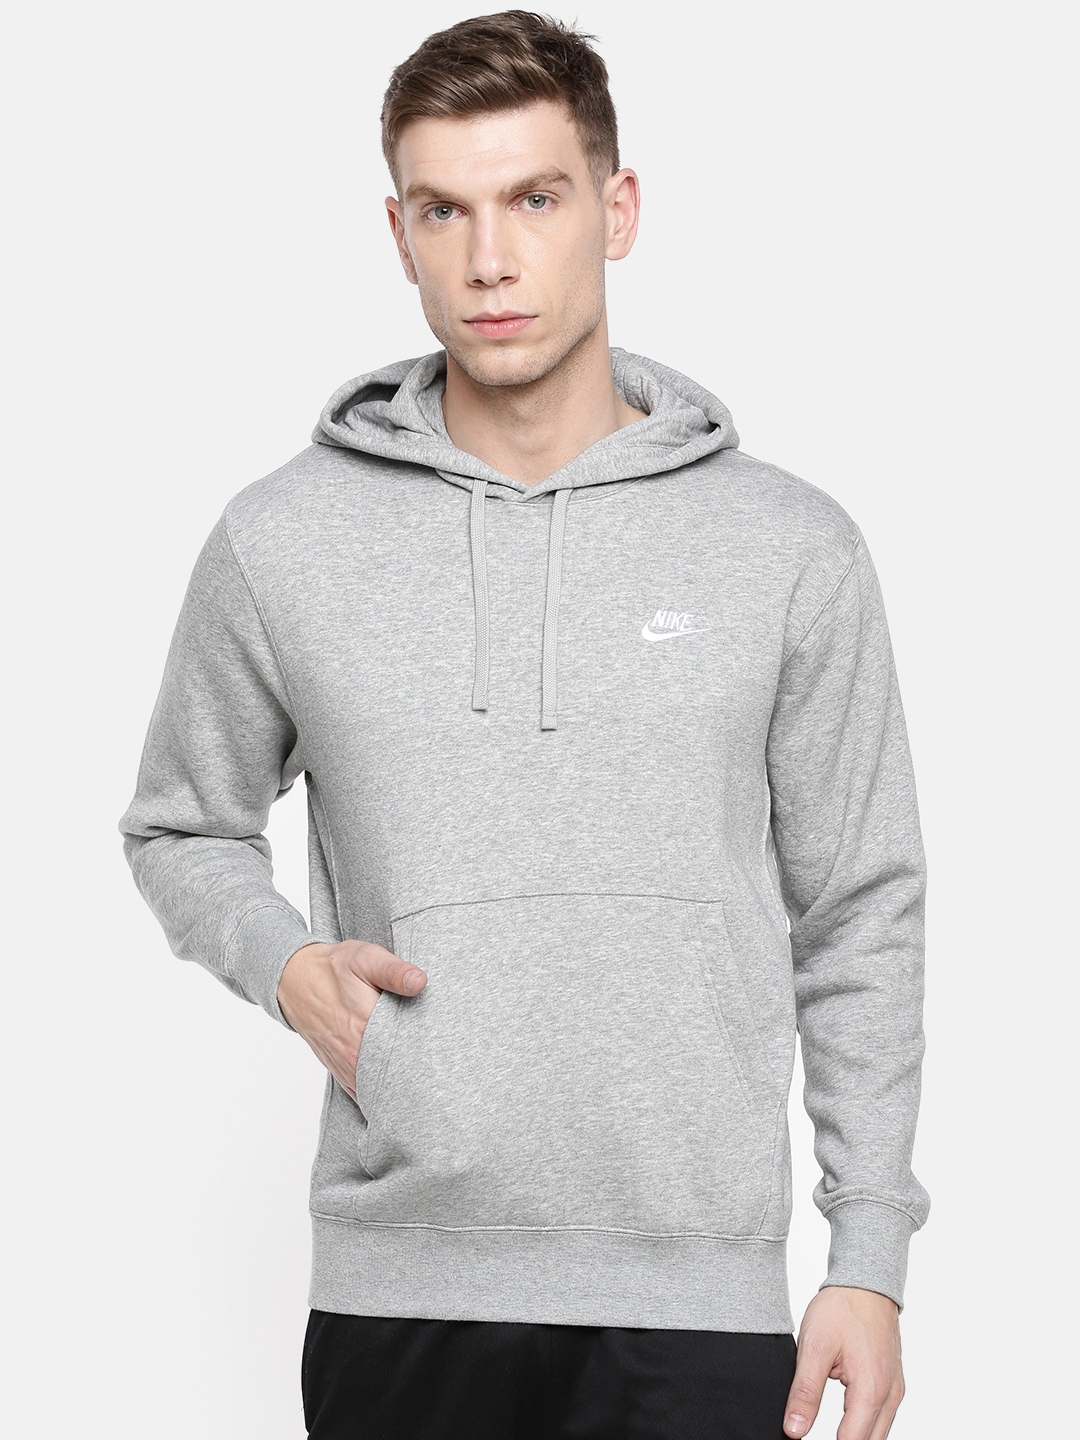 Nike Men's Hoodie - Grey - M